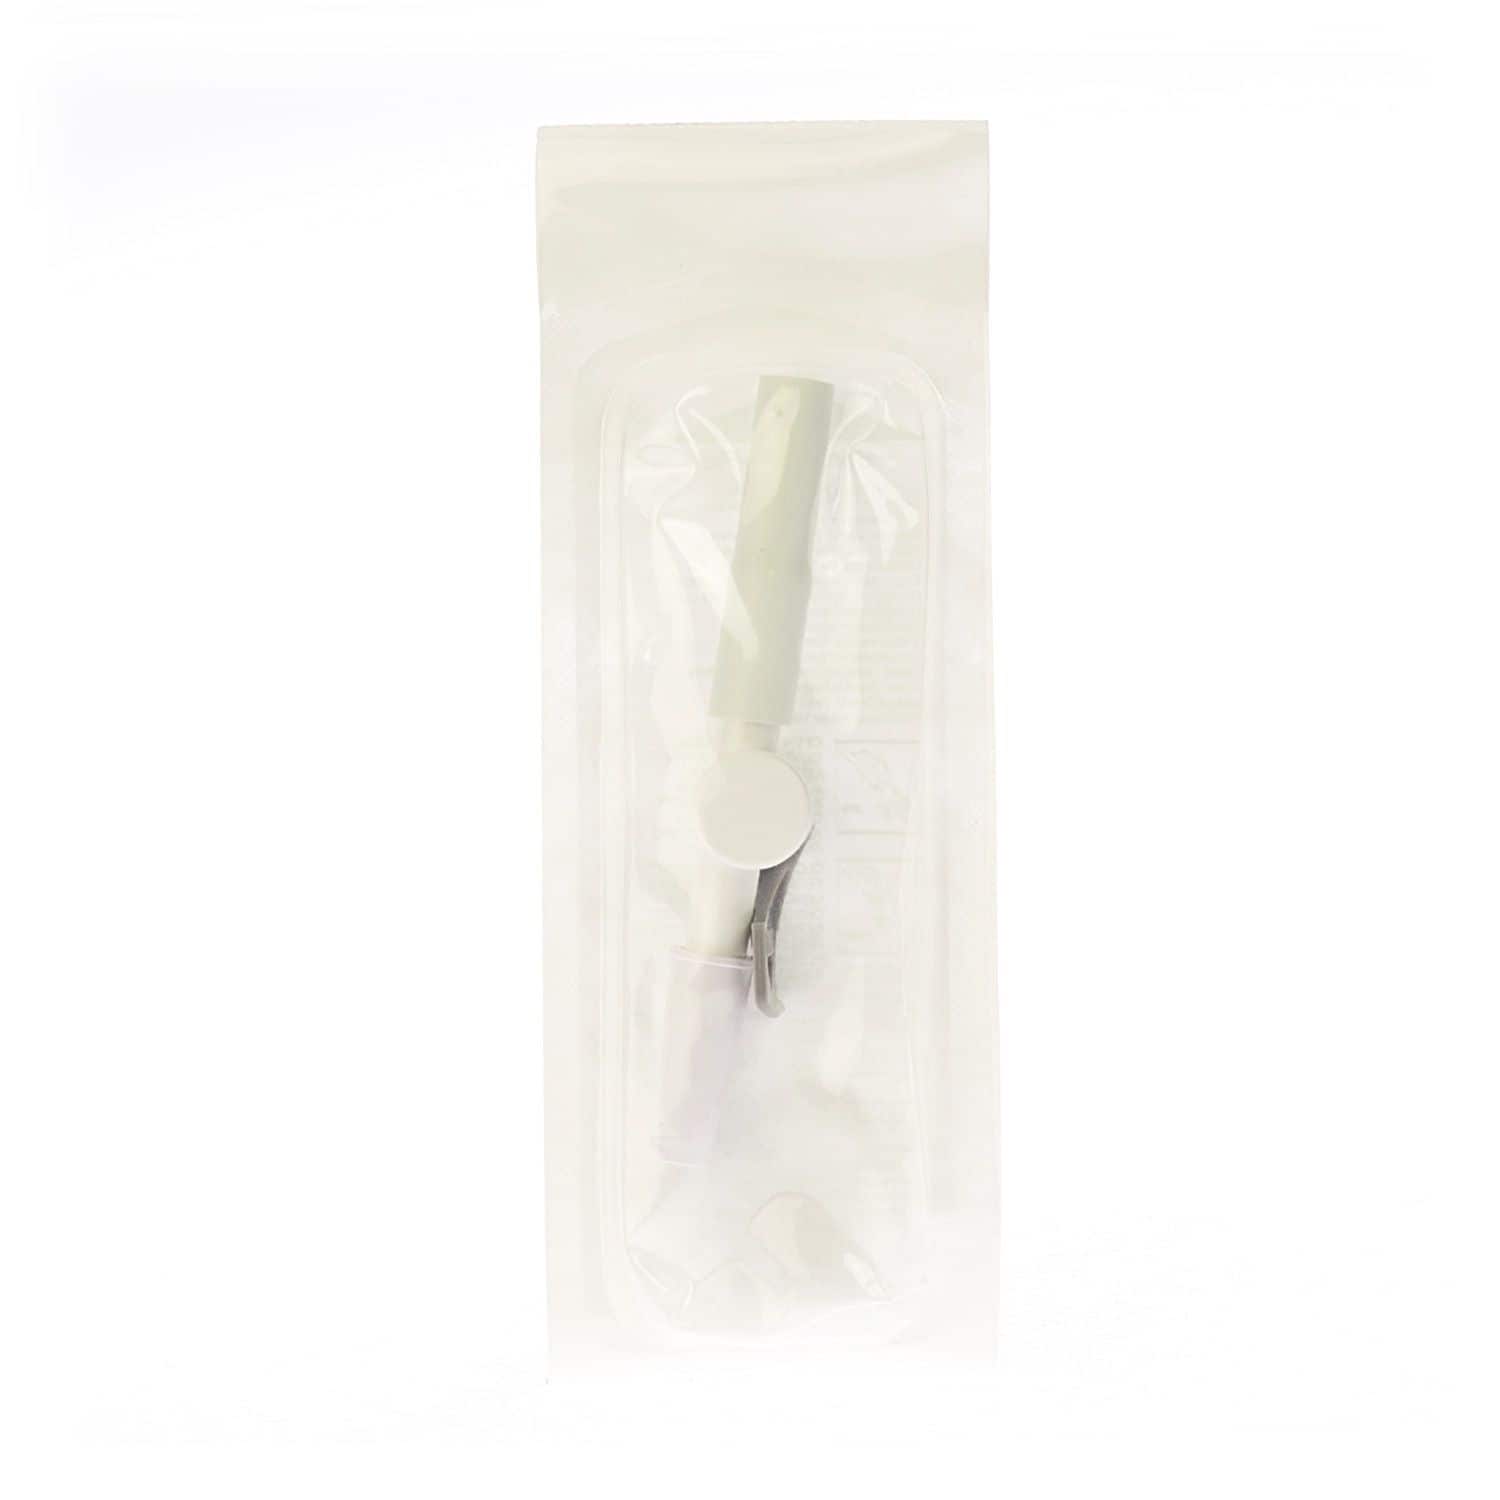 Bard Flip-flo Drainage Vesical Valve Catheter